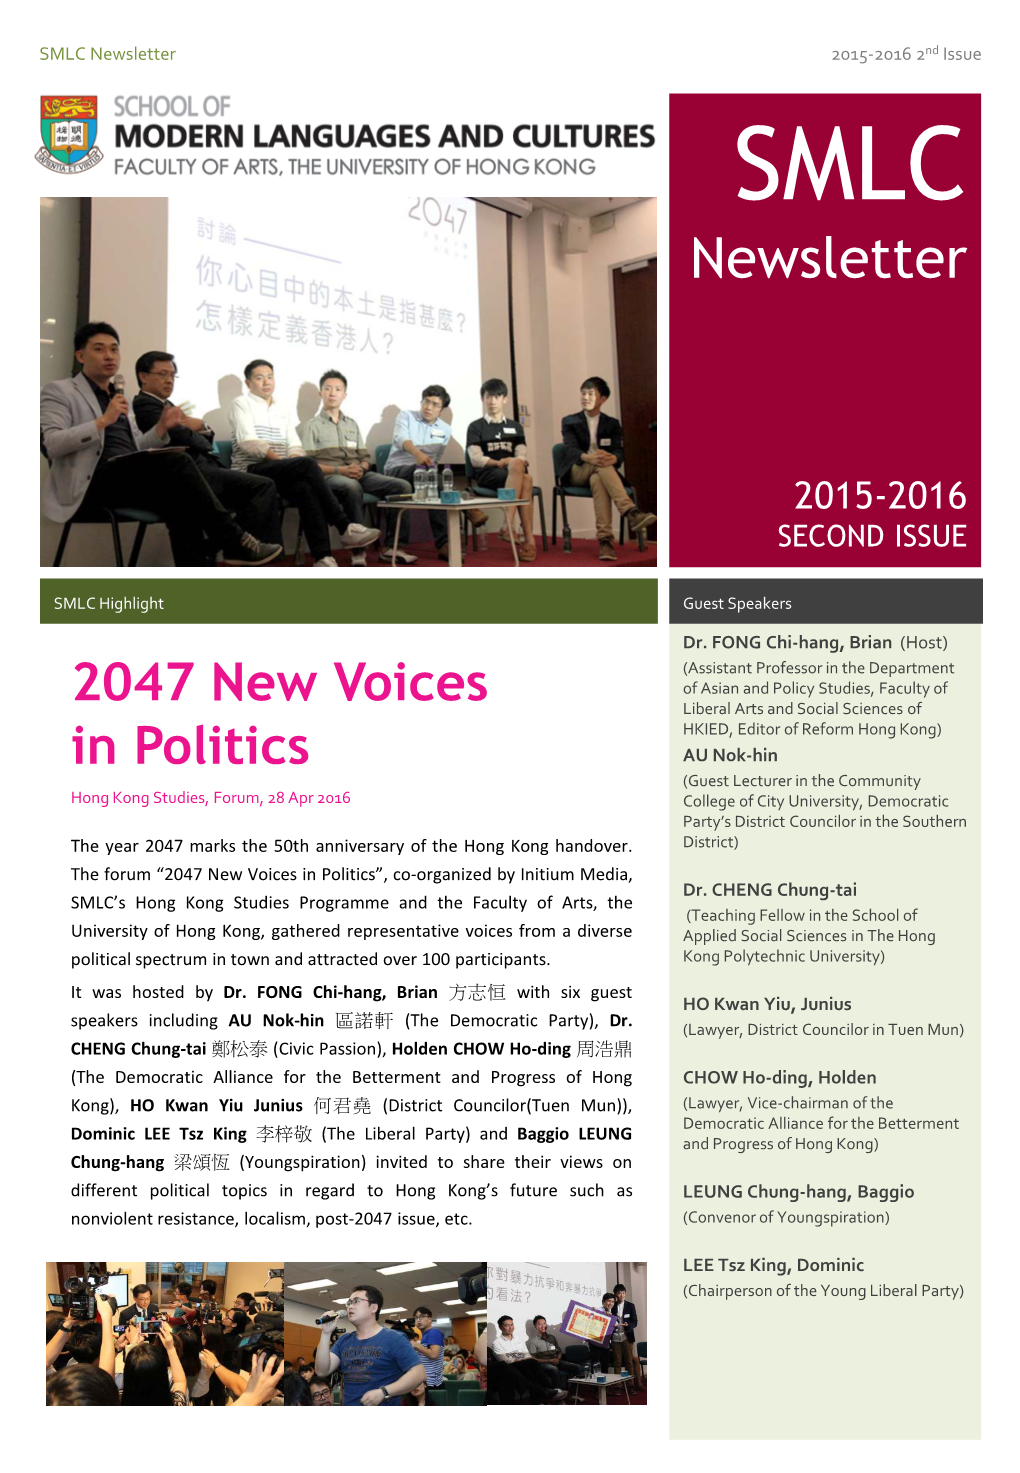 SMLC Newsletter | 2015-2016 2Nd Issue 2